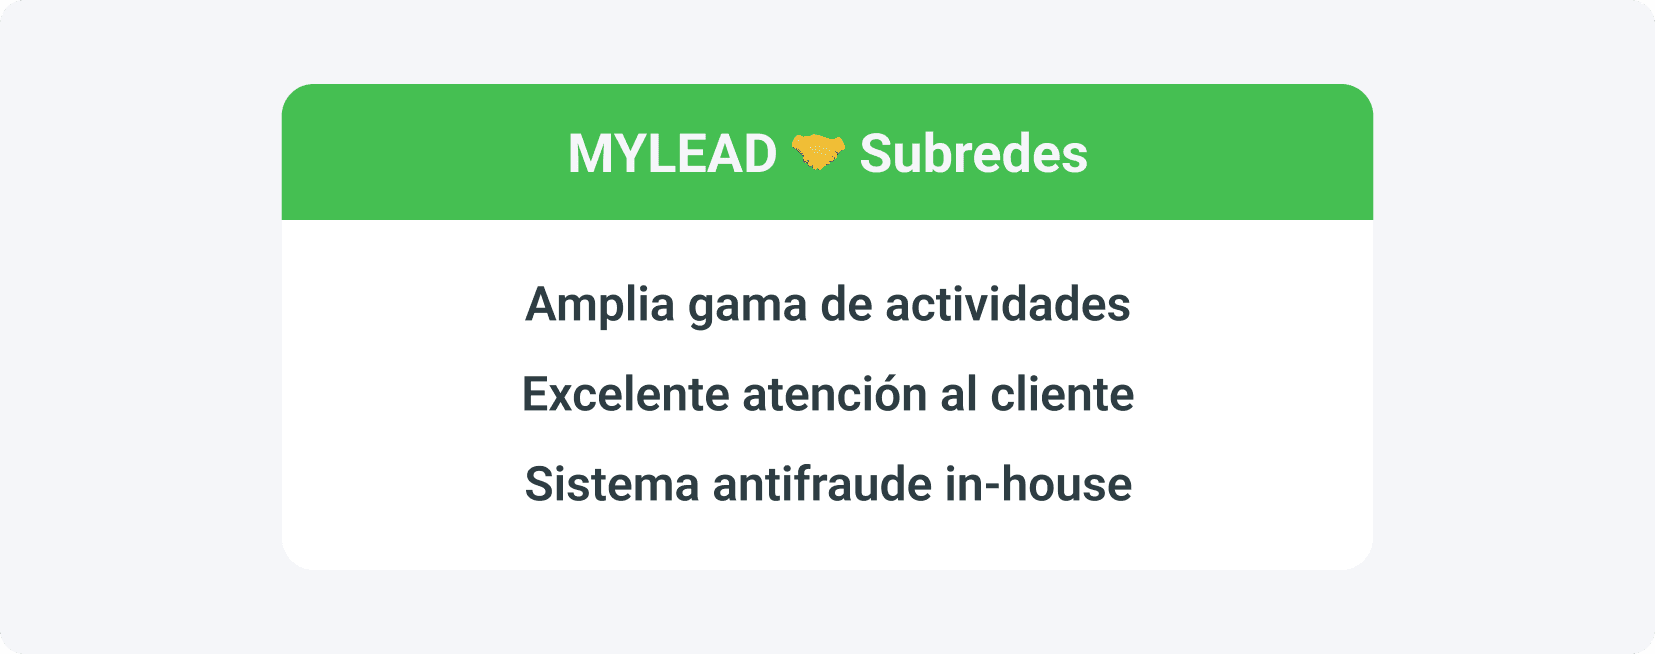 Las ventajas de la cooperación de subred con una red de afiliados como MyLead son principalmente una amplia gama de actividades, una excelente atención al cliente y un sistema interno antifraude.